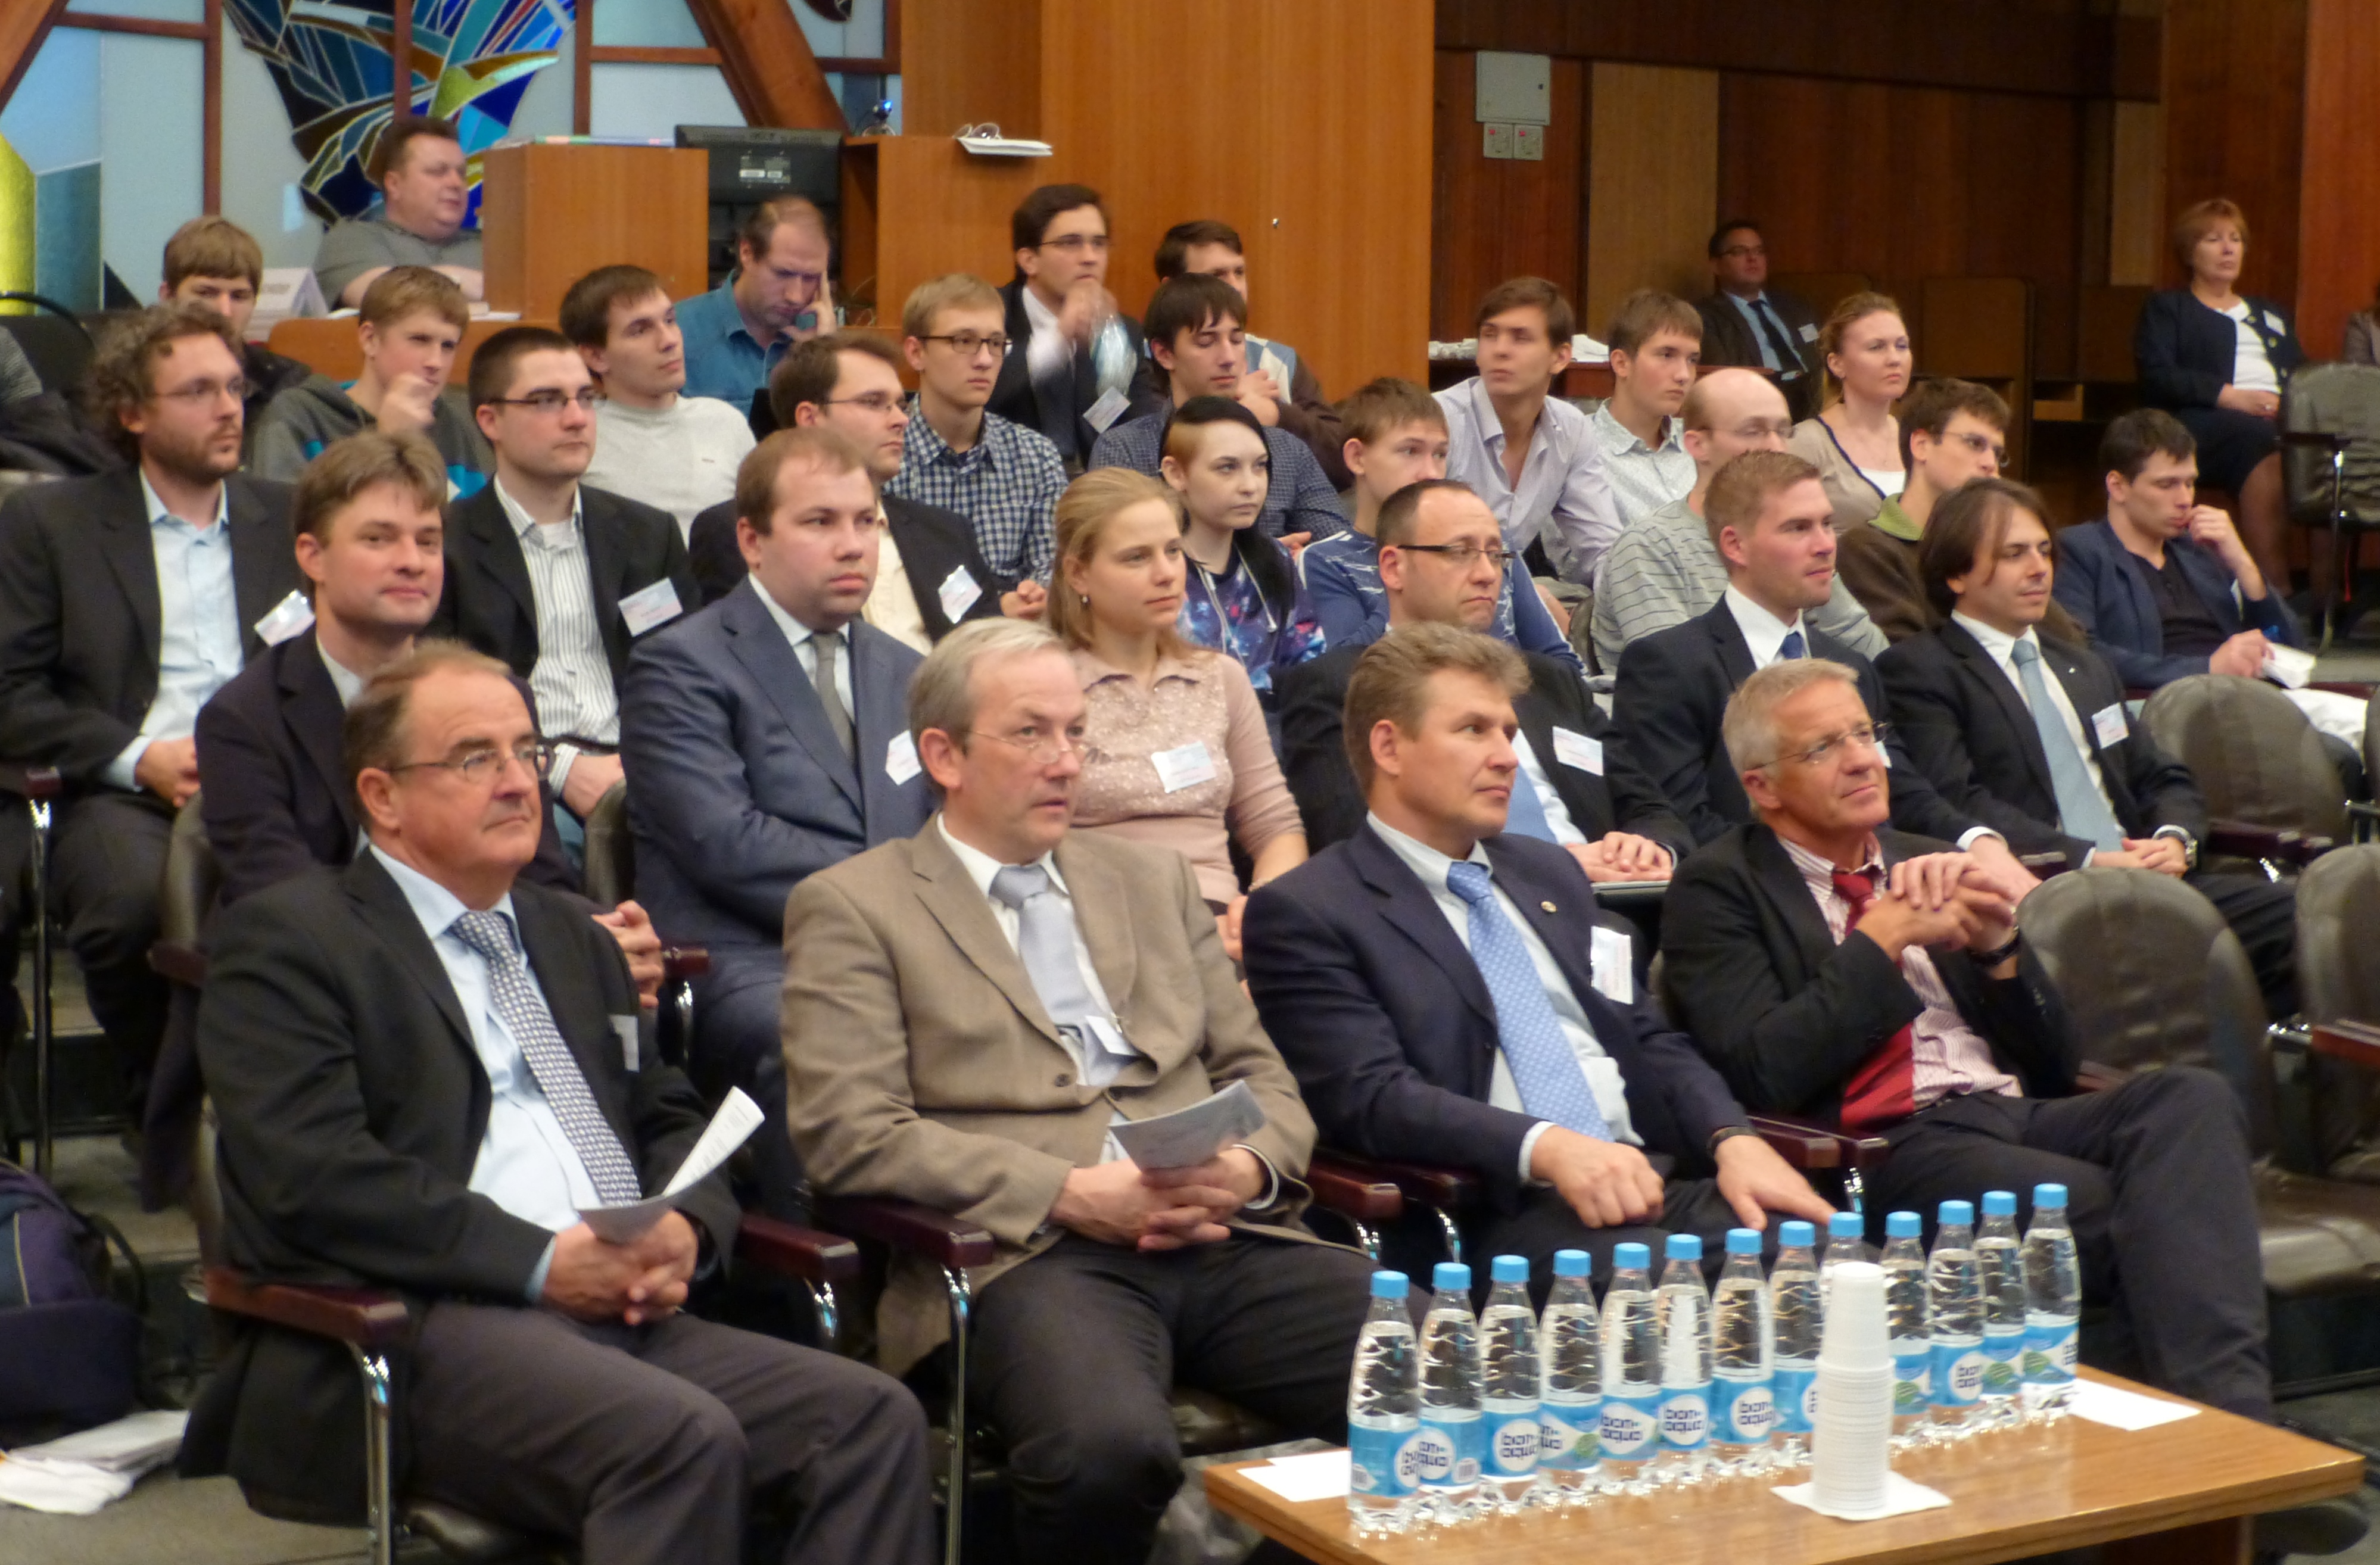 Plenarsitzung an der NSTU. Erste Reihe v.l.n.r.: R. Walther (MTU Aero Engines München), M. Oberlack (TU Darmstadt), A. Shiplyuk (ITAM SB RAS), W. Schröder (RWTH Aachen)